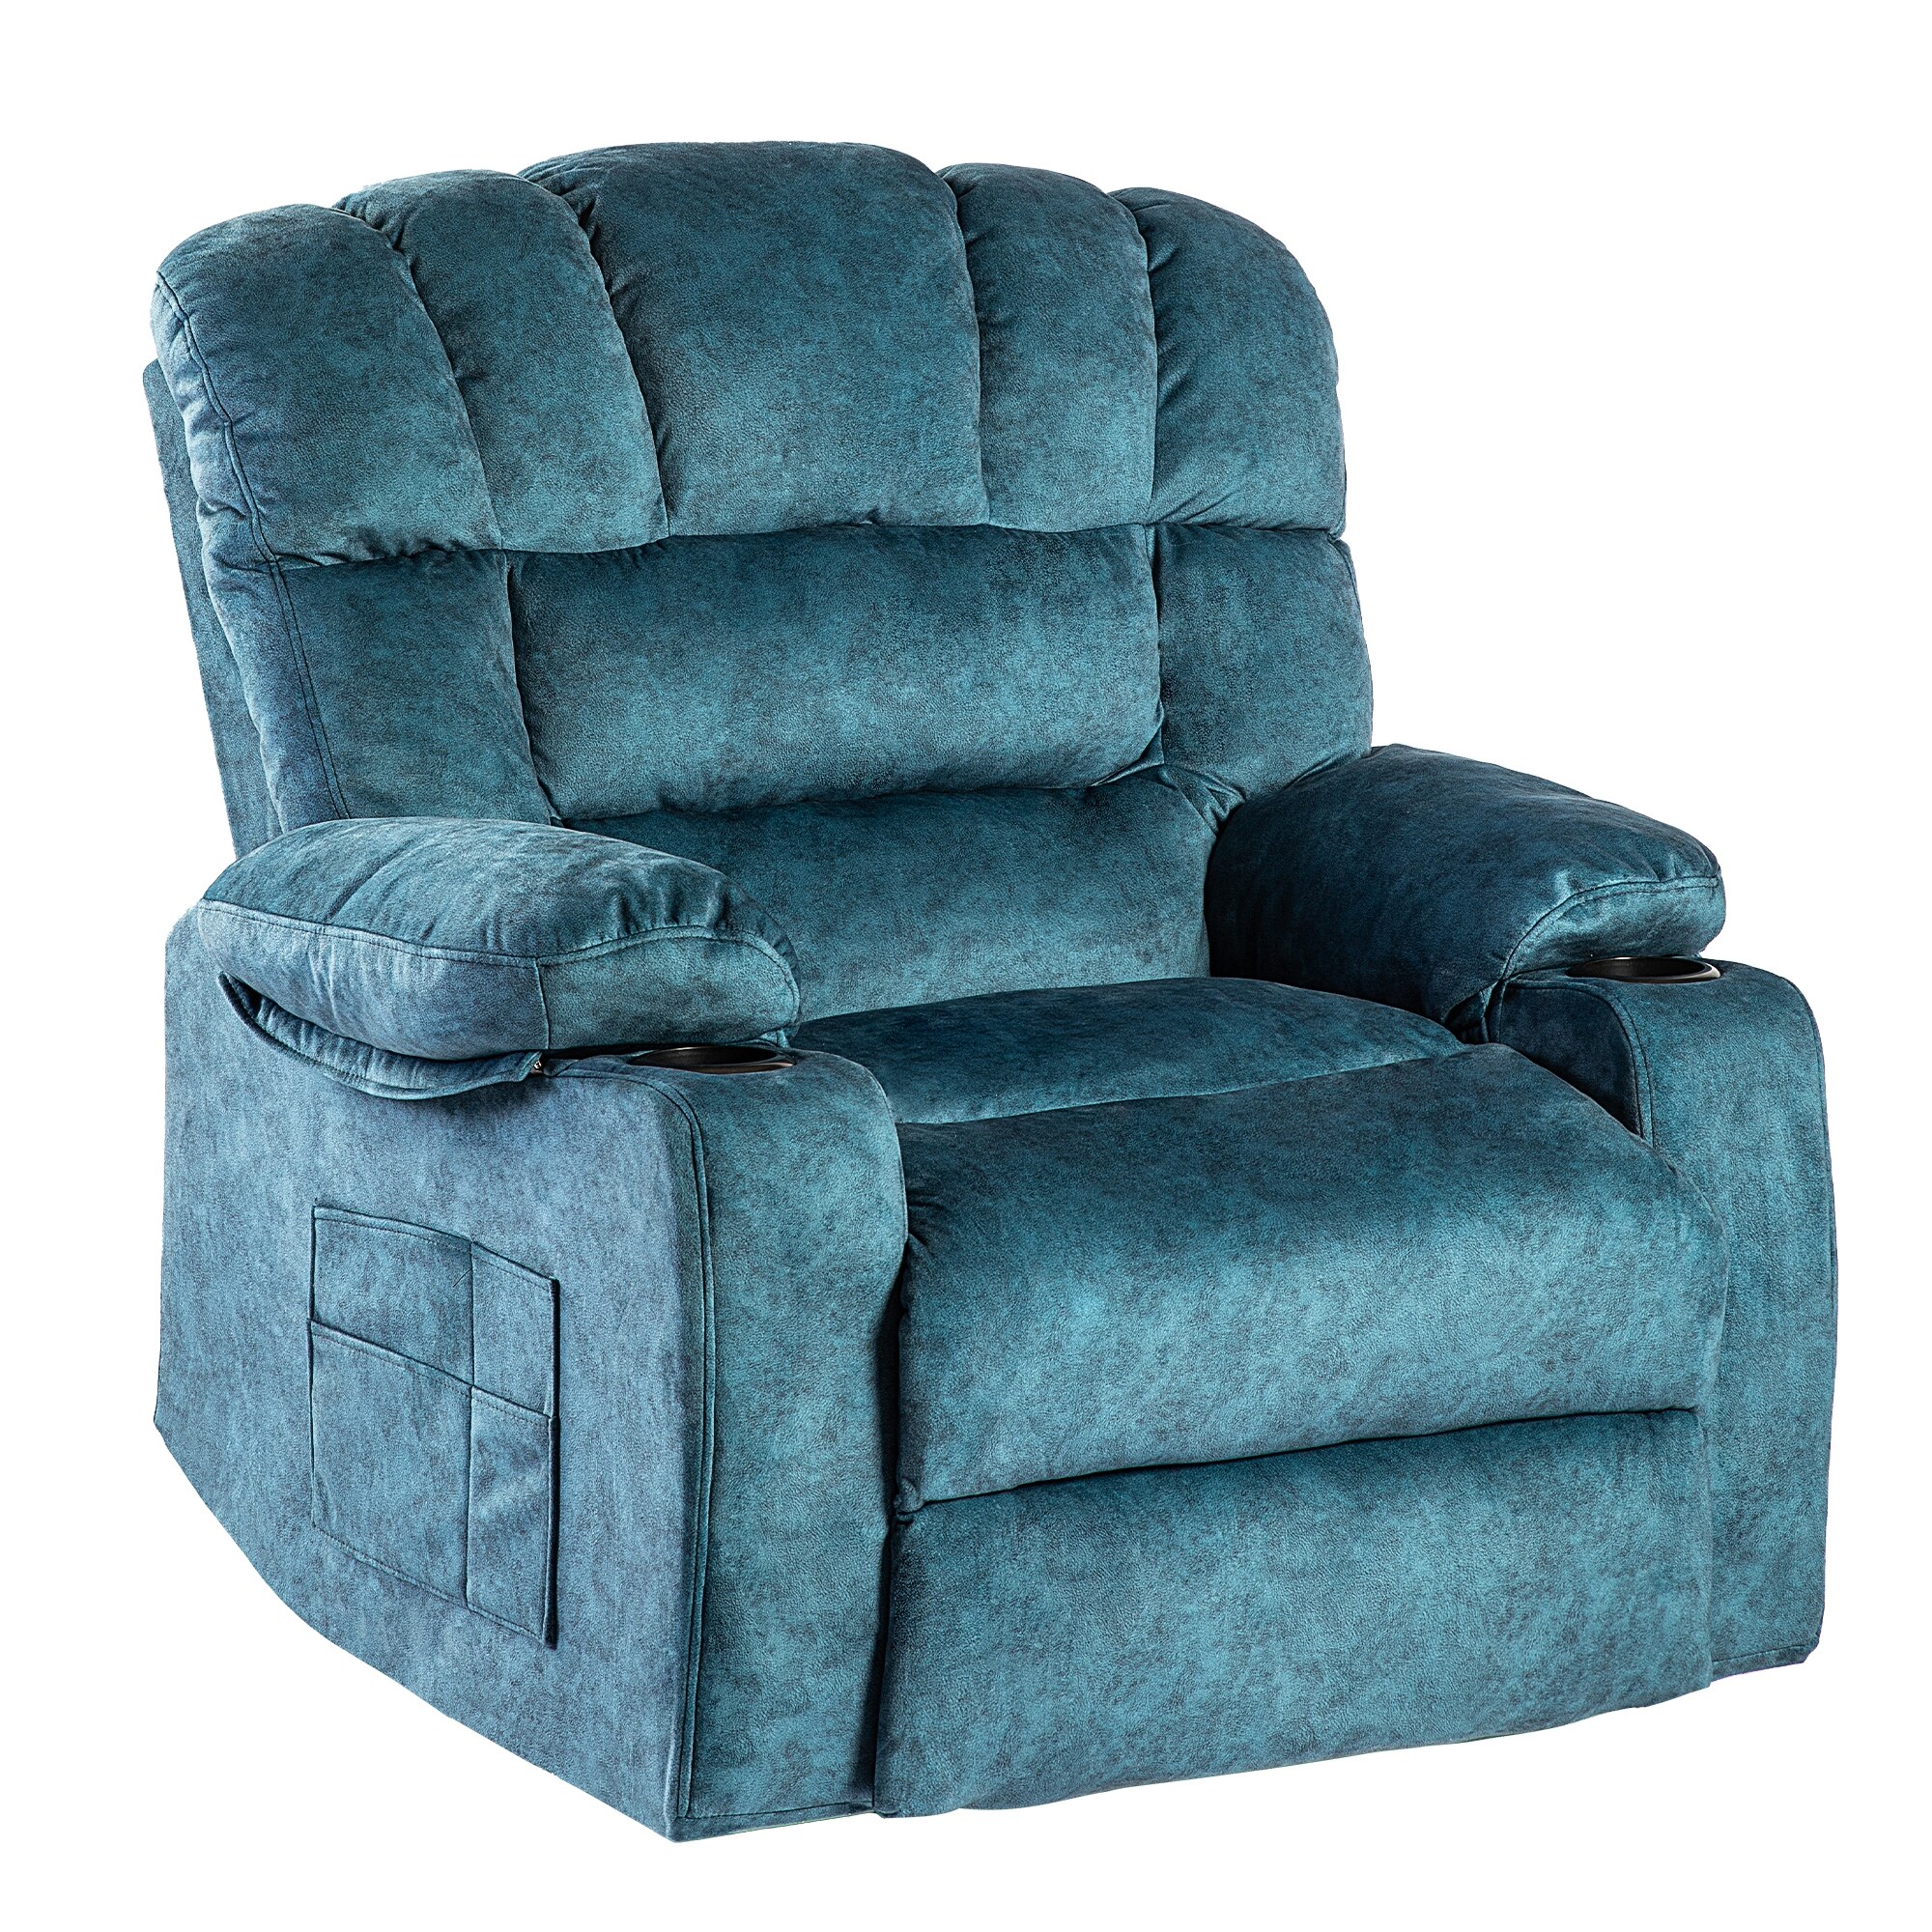 Blue Oversized Massage Recliner Chair